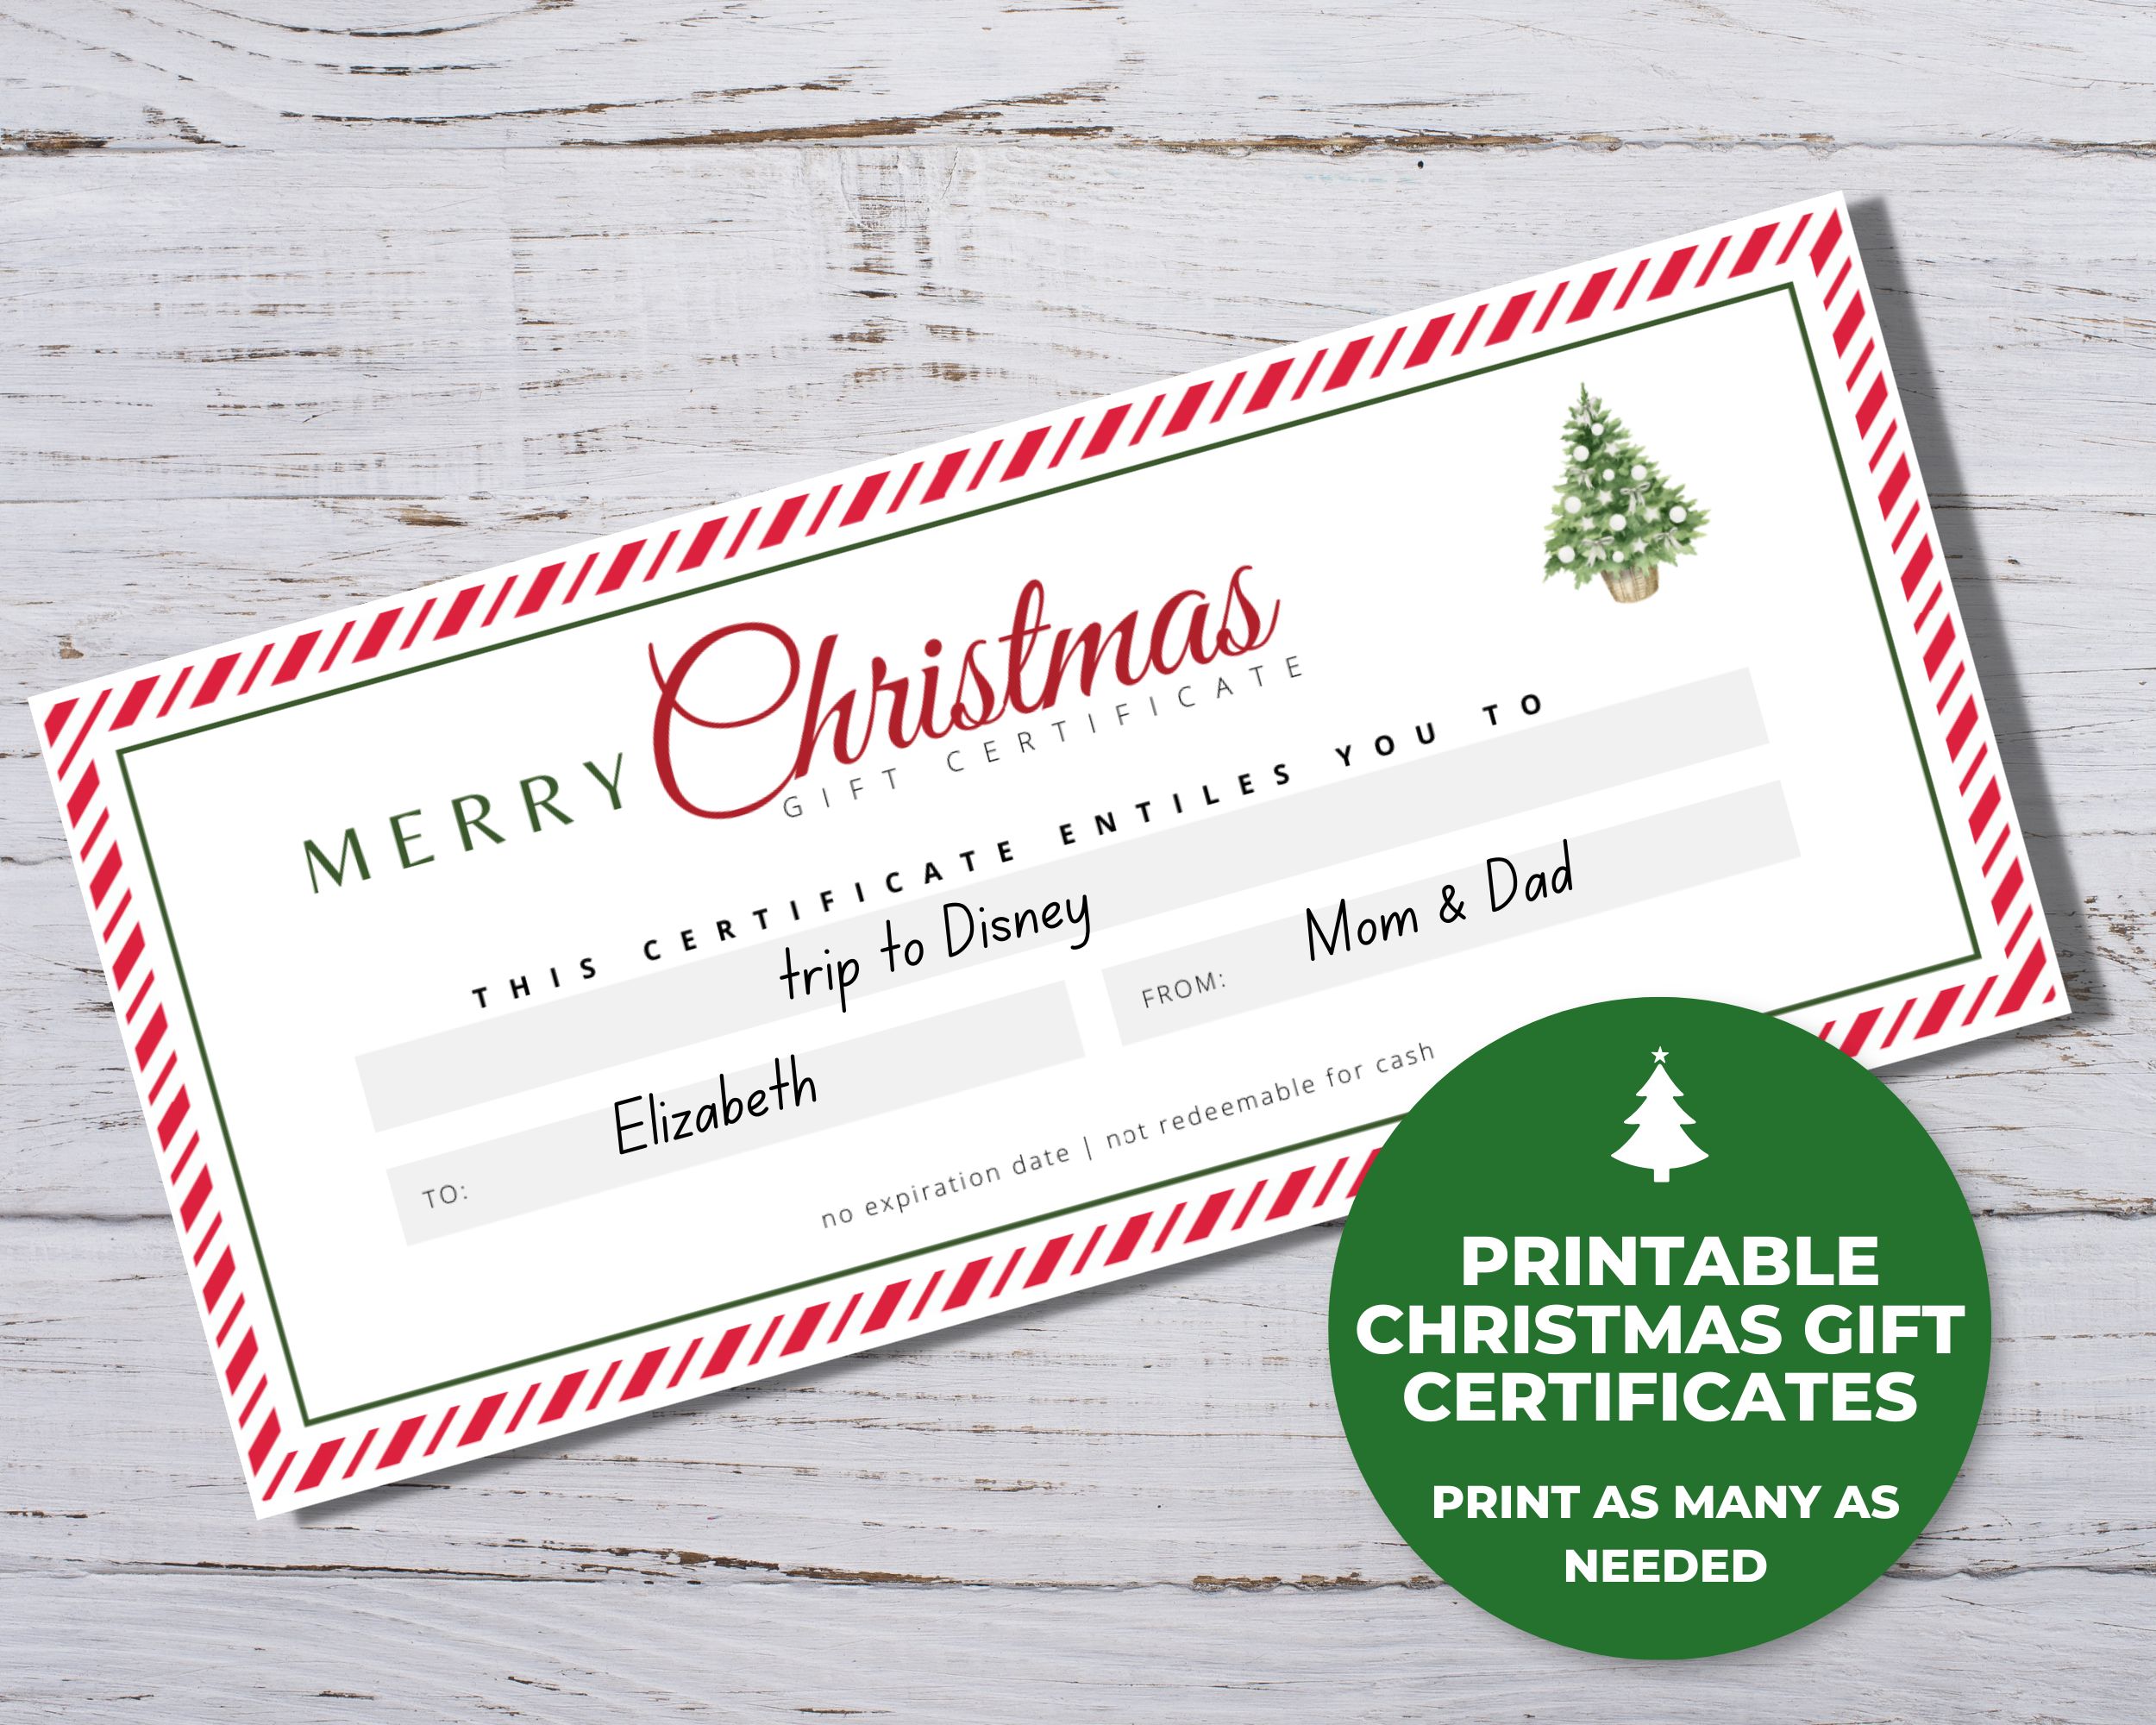 http://goimagine.com/images/detailed/2034/Christmas_Gift_Certificate__-_Etsy_Listing_Photos_org.jpg